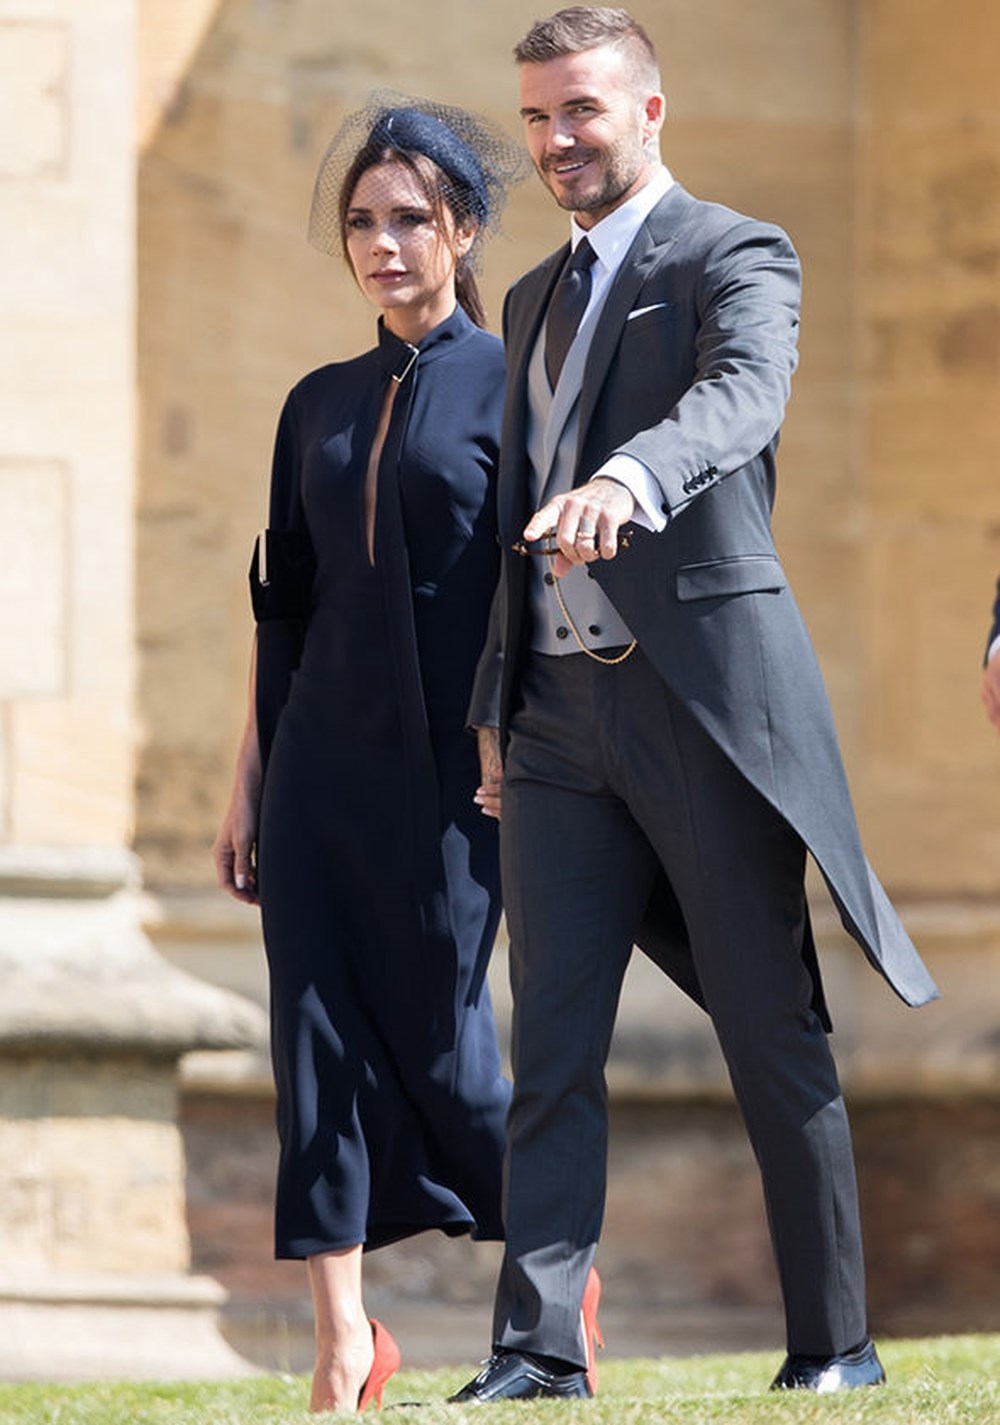 
Một trong những sao được chú ý nhiều nhất tại lễ cưới Hoàng gia này chính là David Beckham và siêu mẫu Victoria.